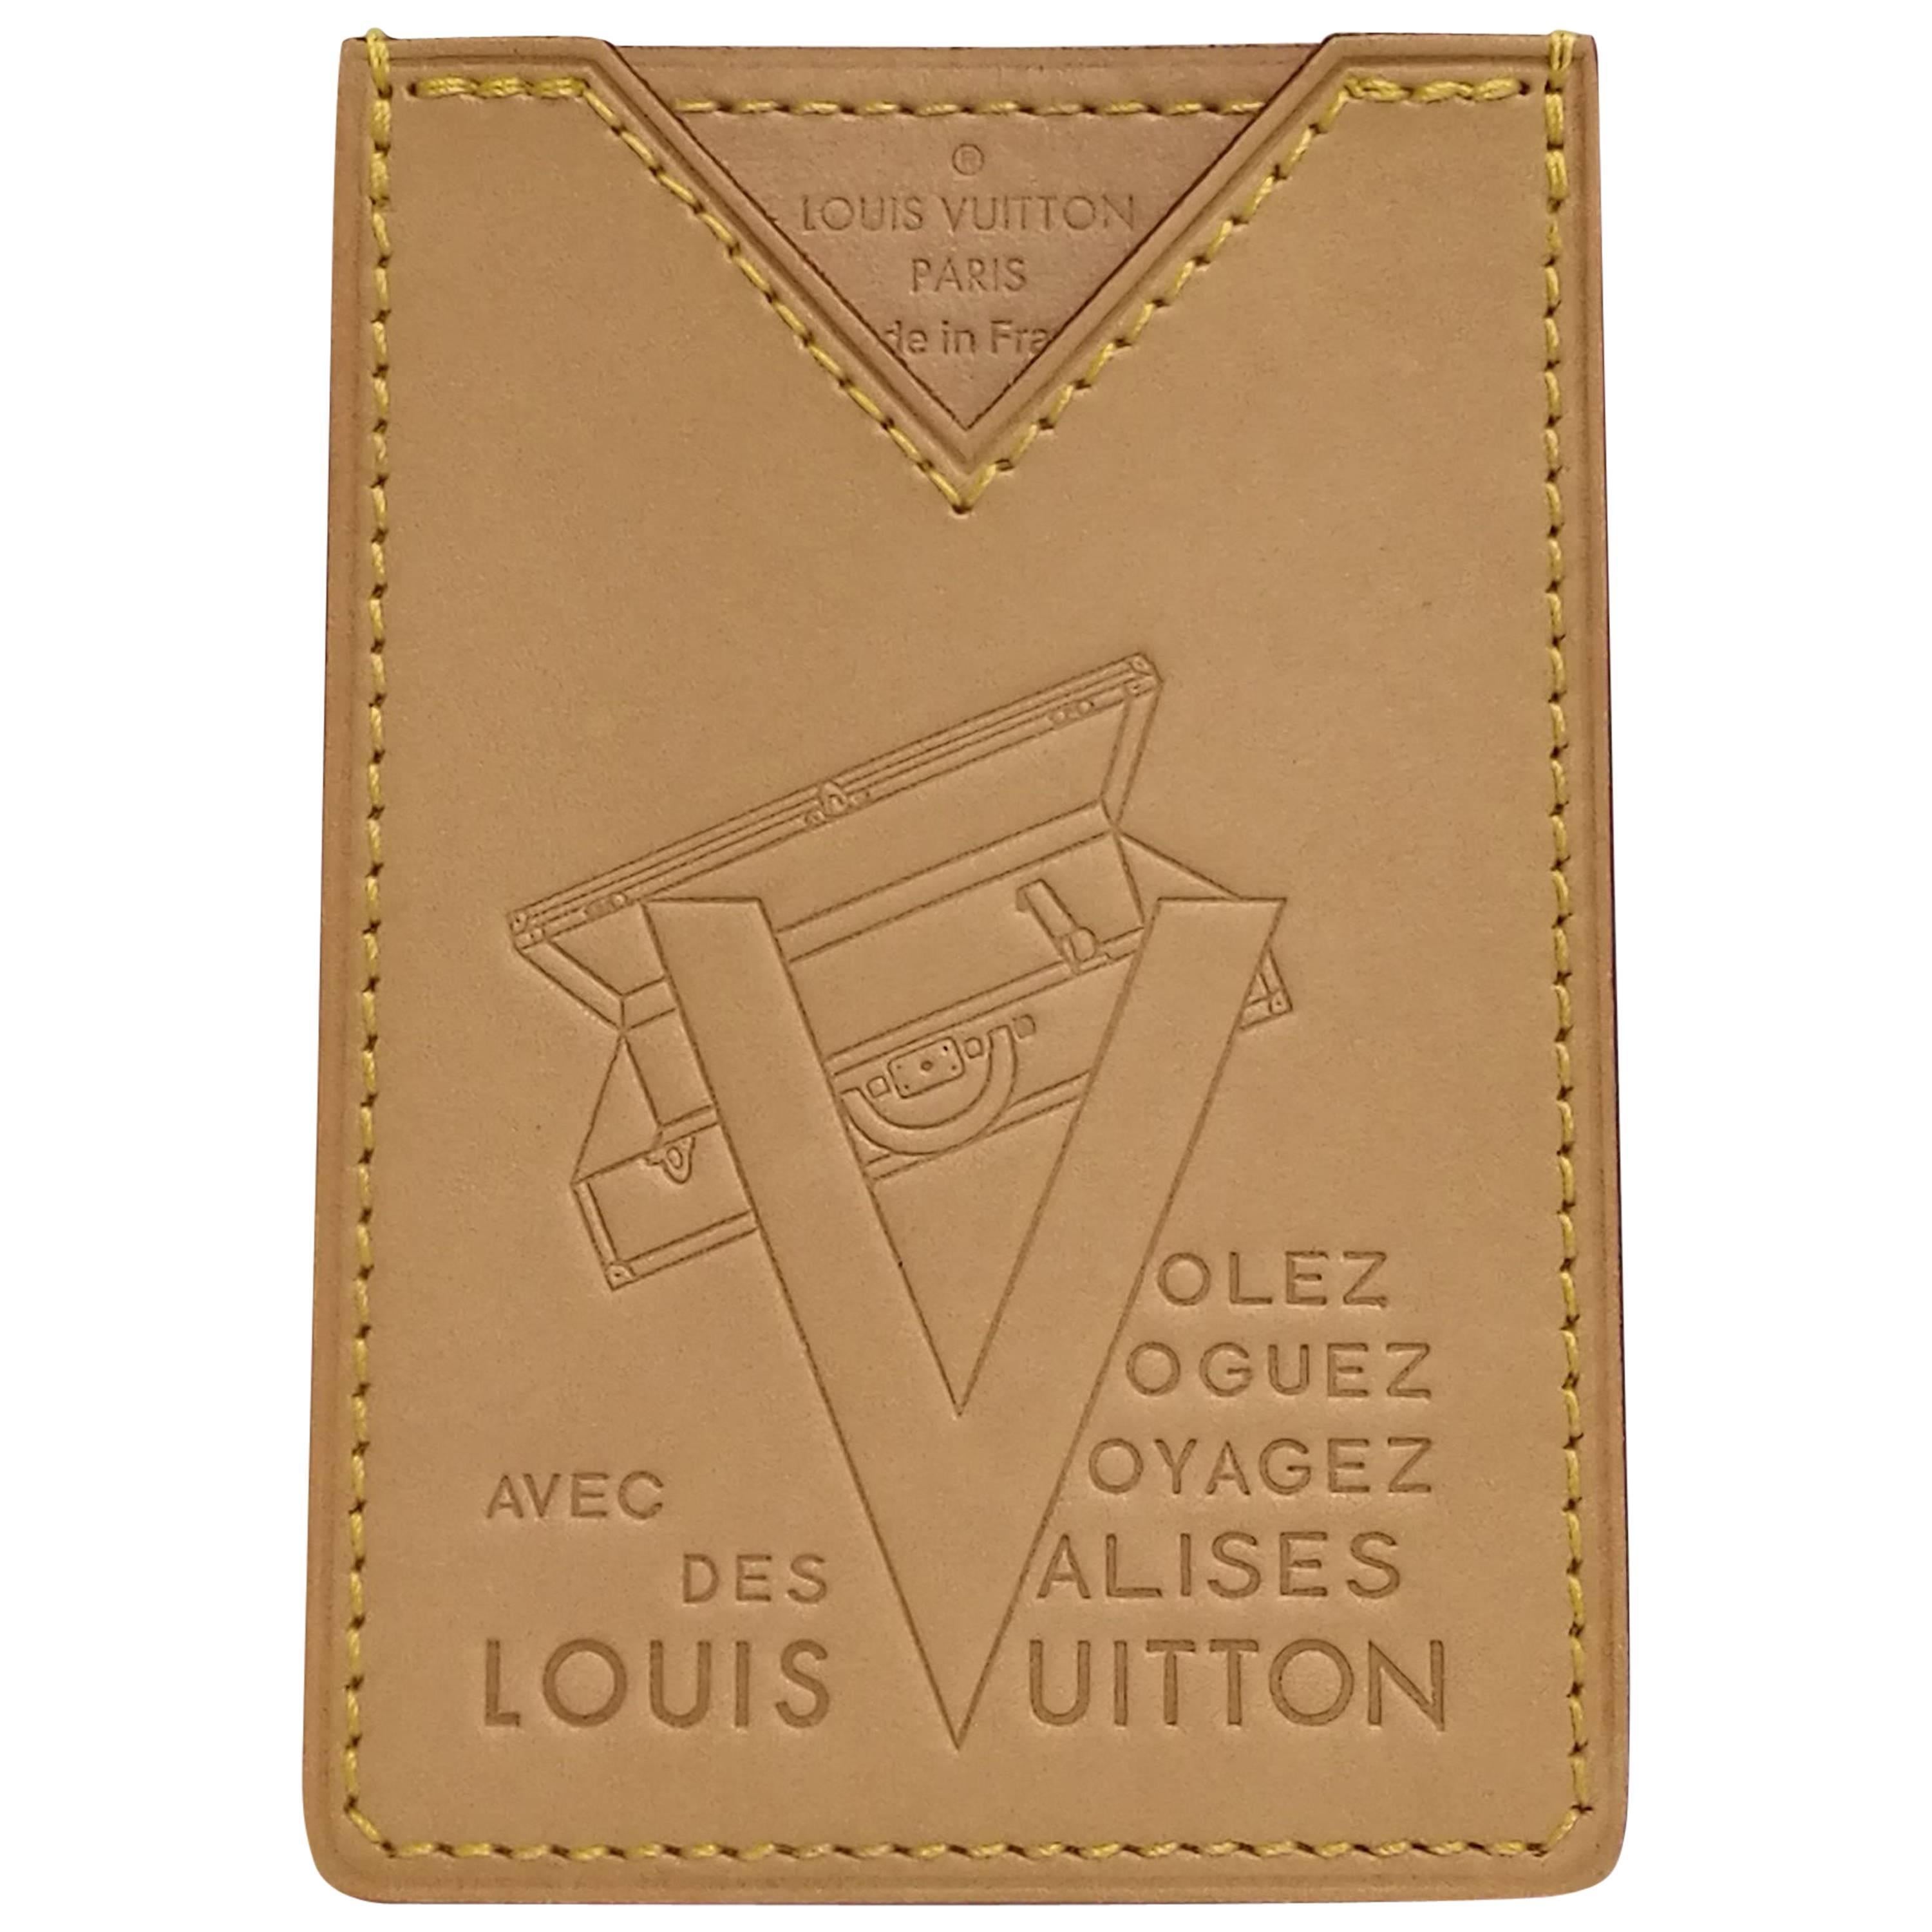 Louis Vuitton Lim. Ed. Card holder "Volez, Voguez, Voyagez Avec Des Valises"